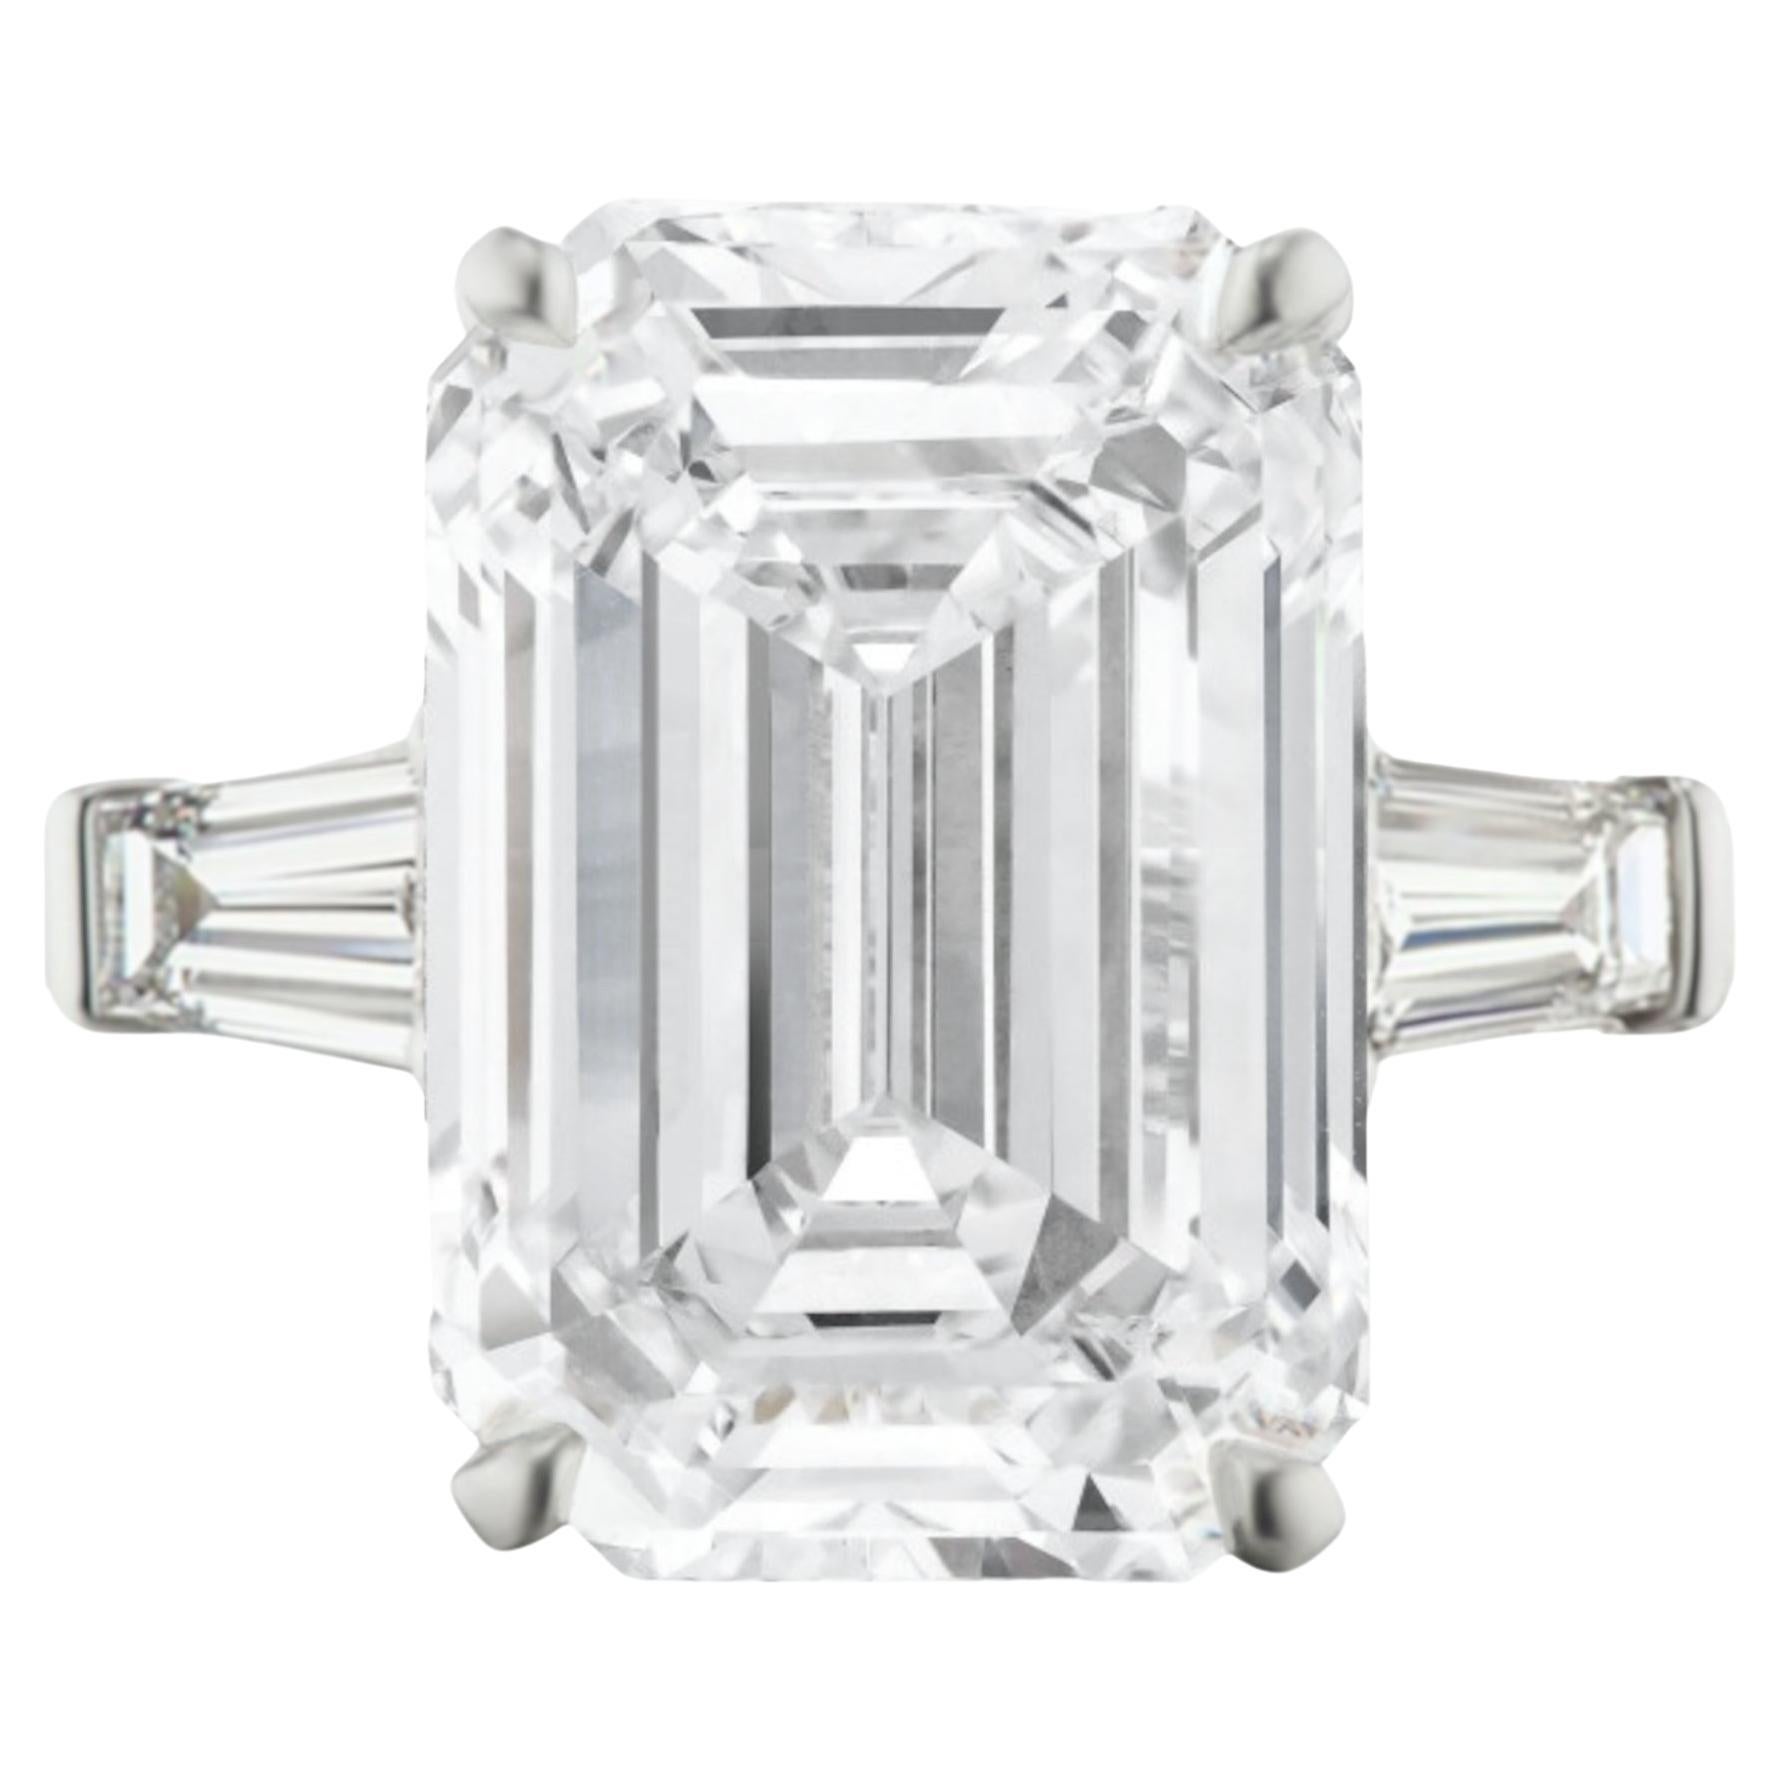 GIA Certified 7.88 Carat Emerald Cut Diamond Ring TYPE IIA Golconda Type